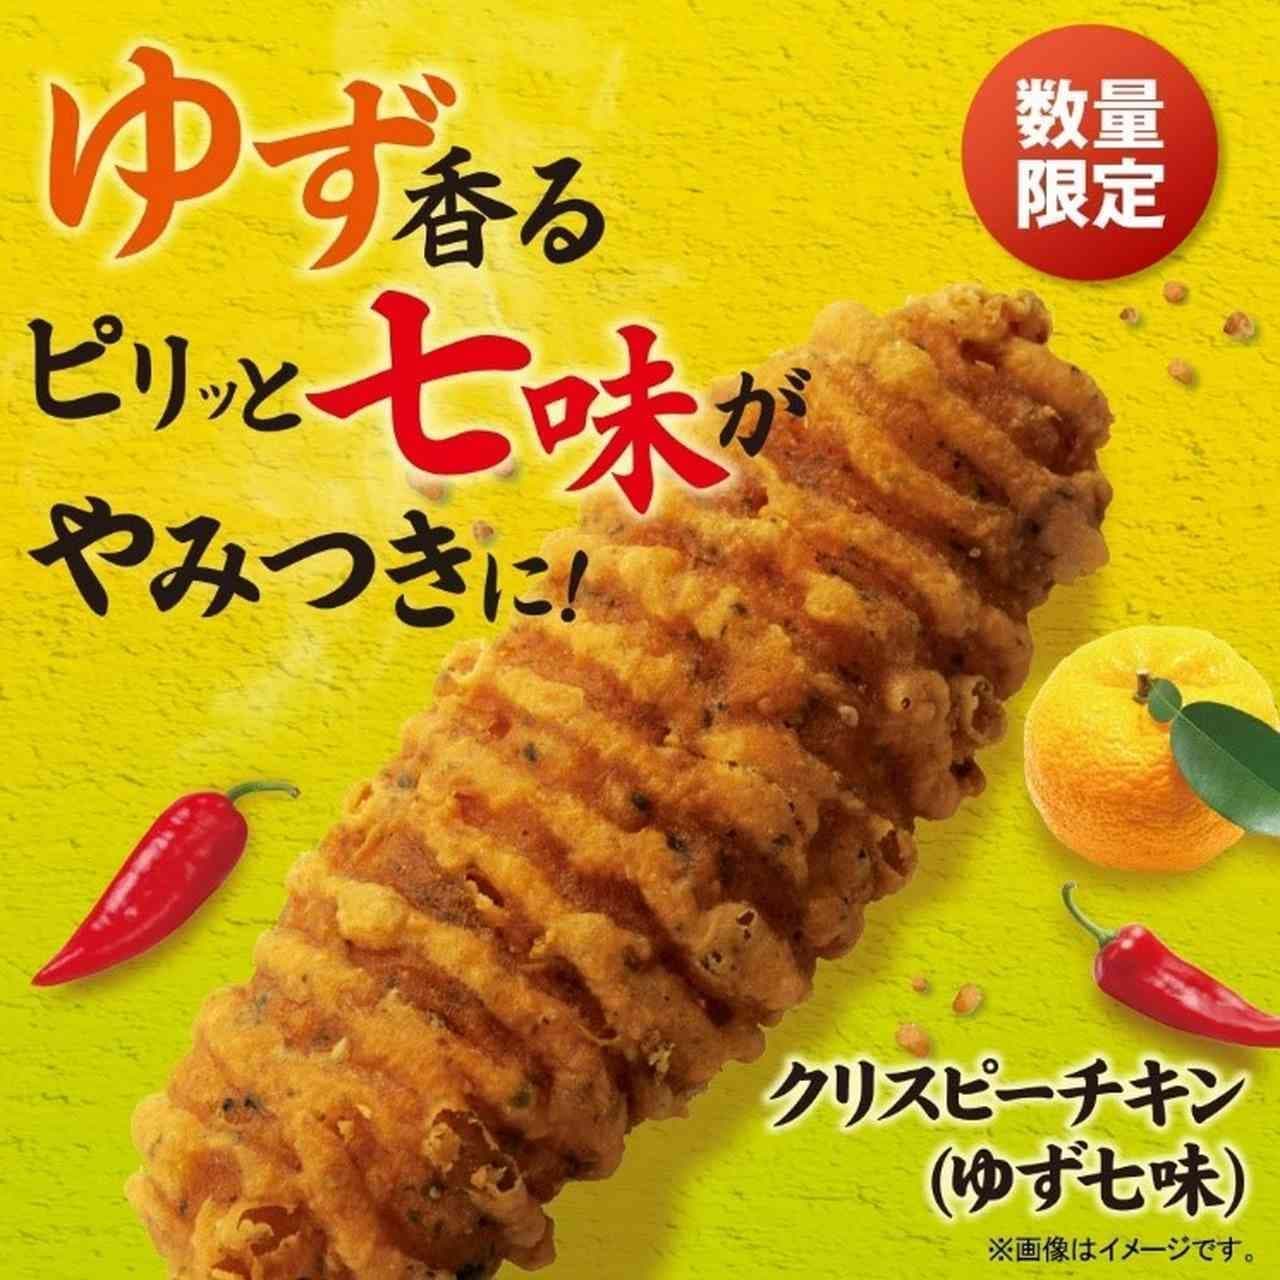 FamilyMart "Crispy Chicken (Yuzu Shichimi)"